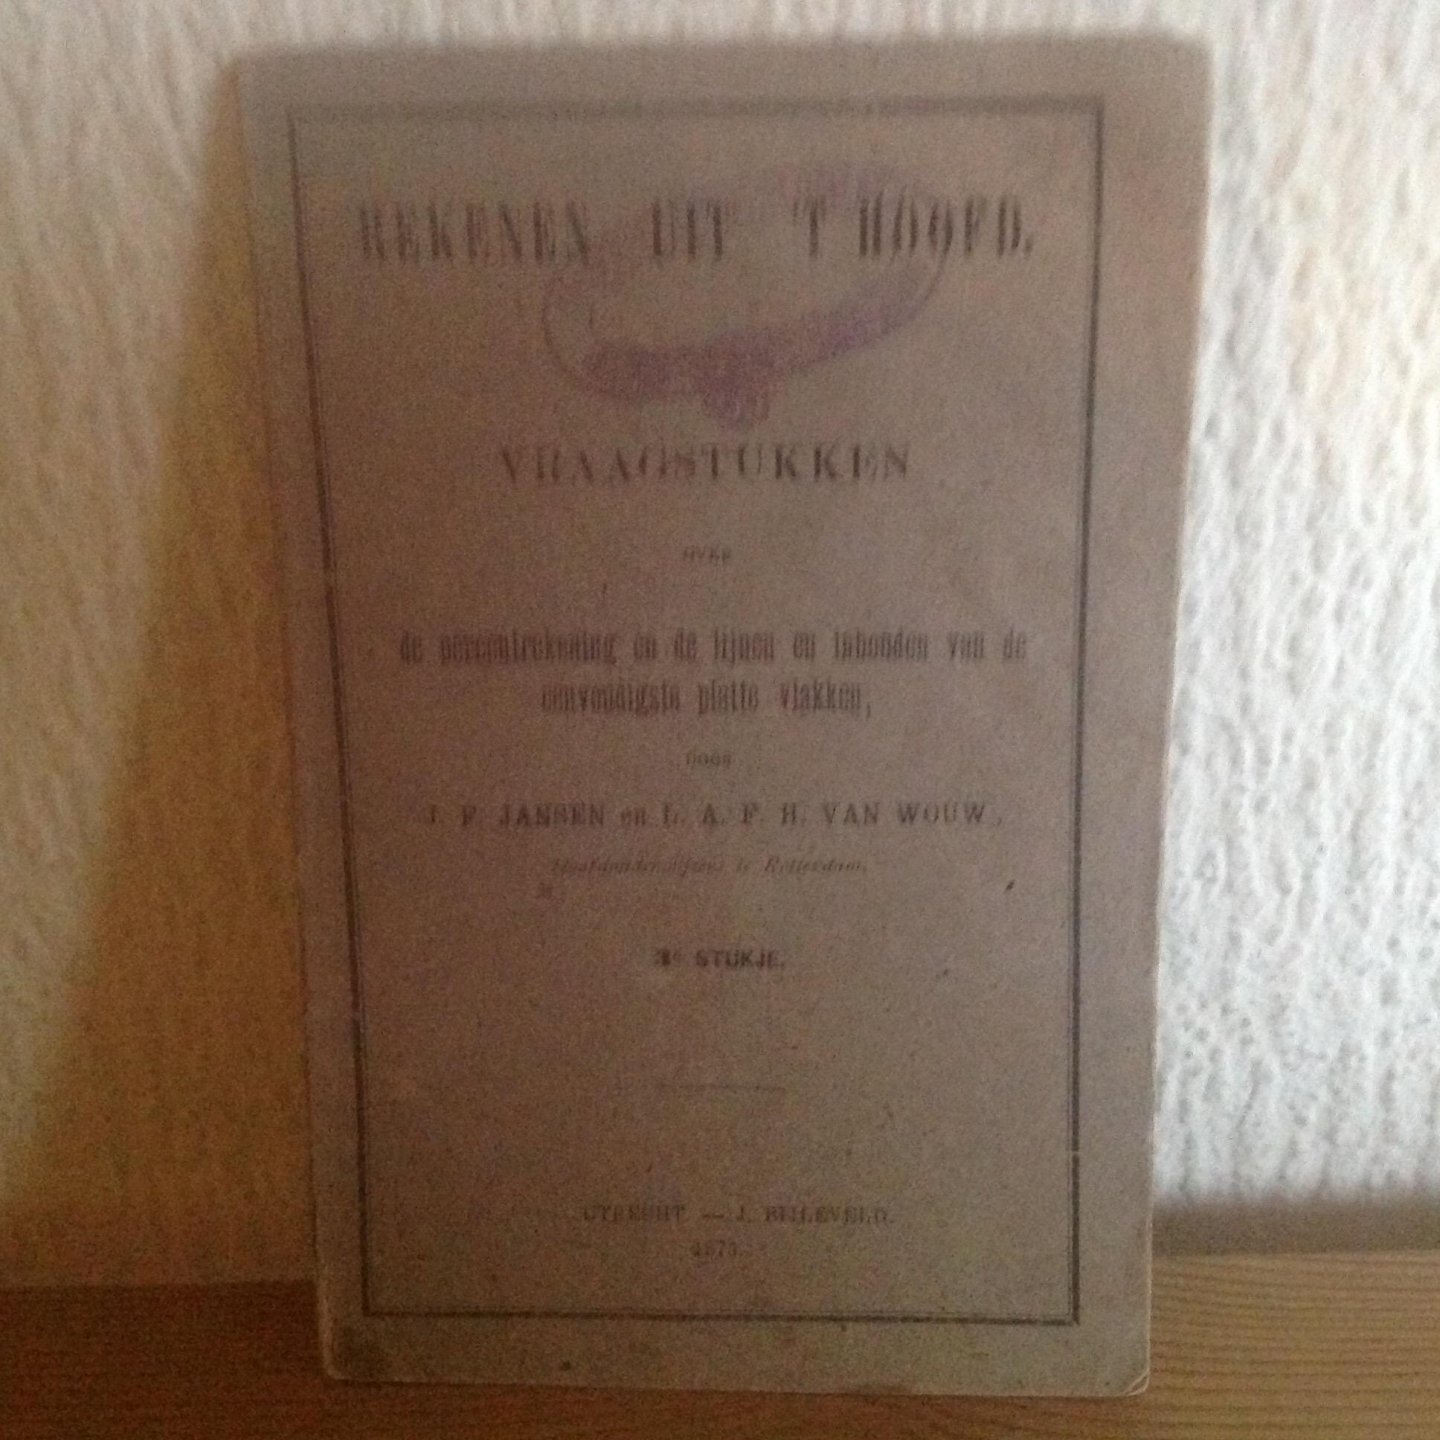 Jansen ,van Wouw - Rekenen uit ,t Hoofd,de percent rekening en de lijnen en inhouden van de eenvoudigste platte vlakken,1873,3e stukje